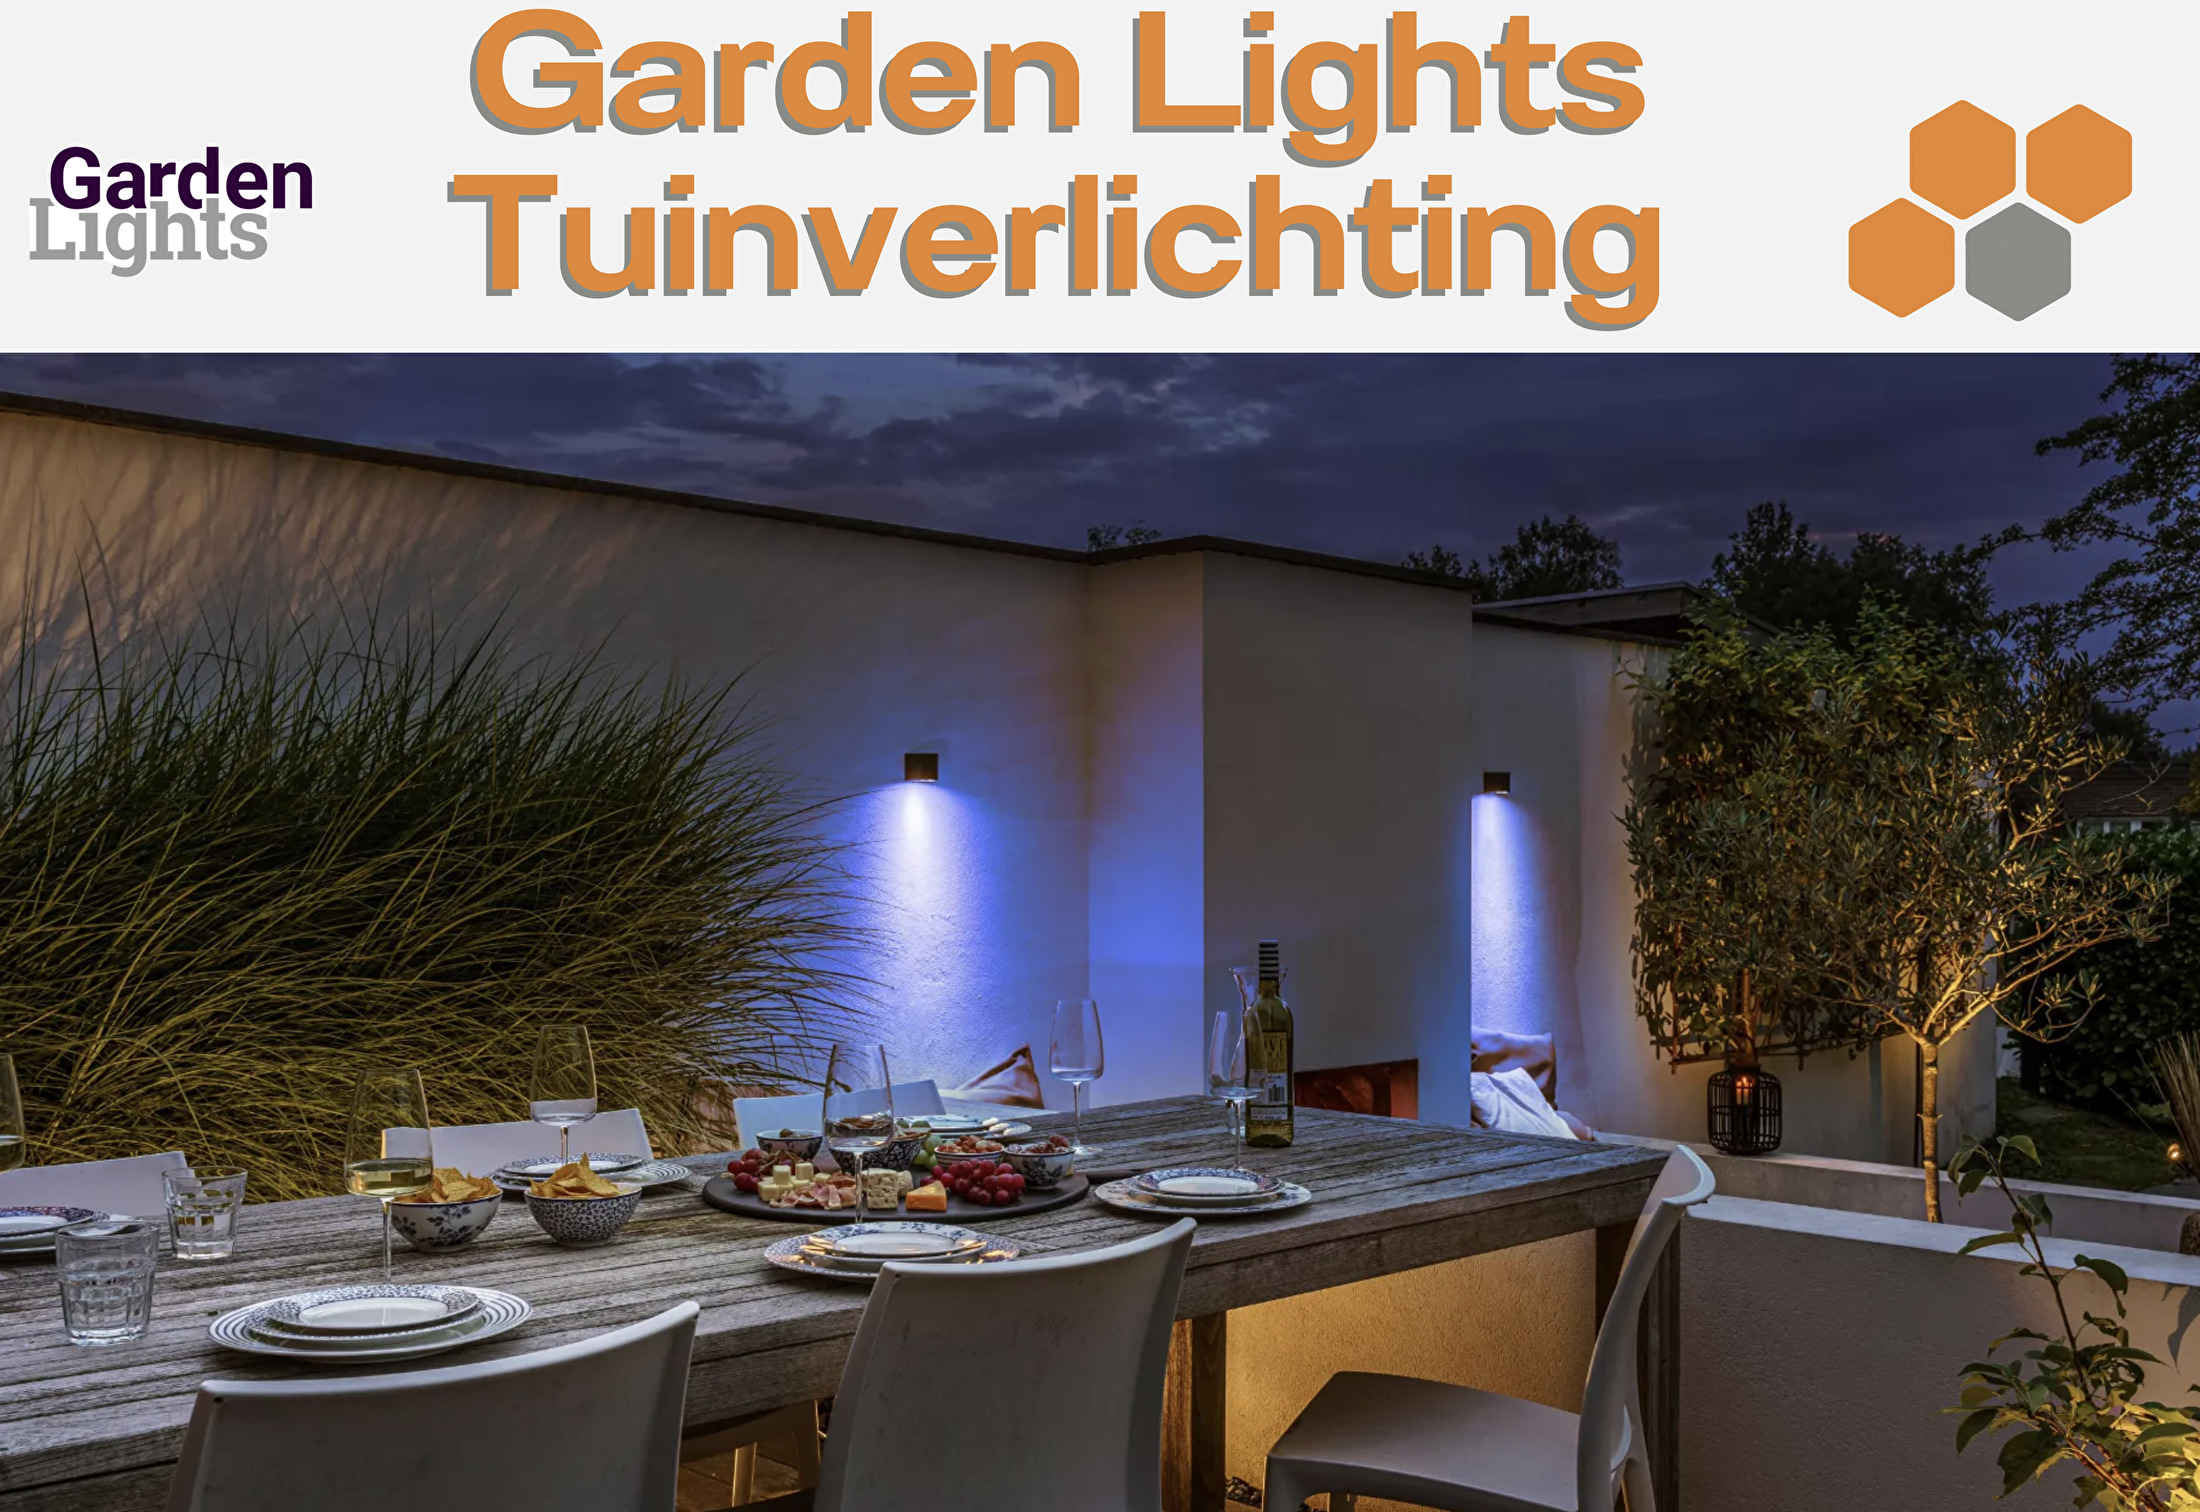 Garden Lights Tuinverlichting